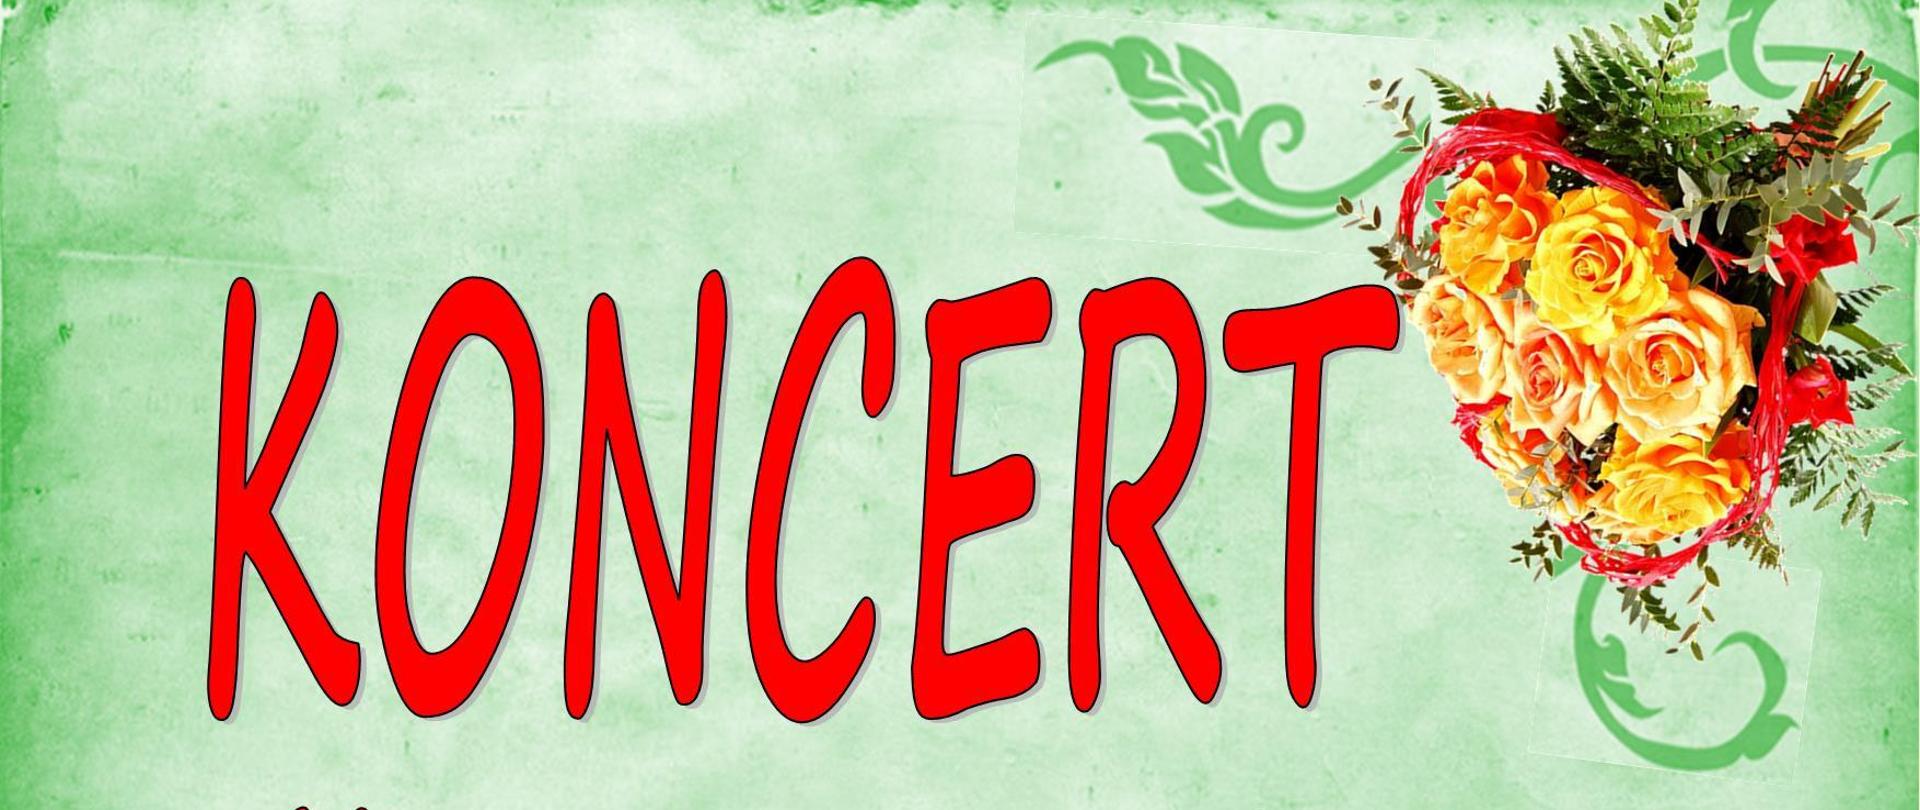 Informacje na temat koncertu na zielonym tle, w prawym i lewym rogu kwiatu w centralnej części czerwone serca